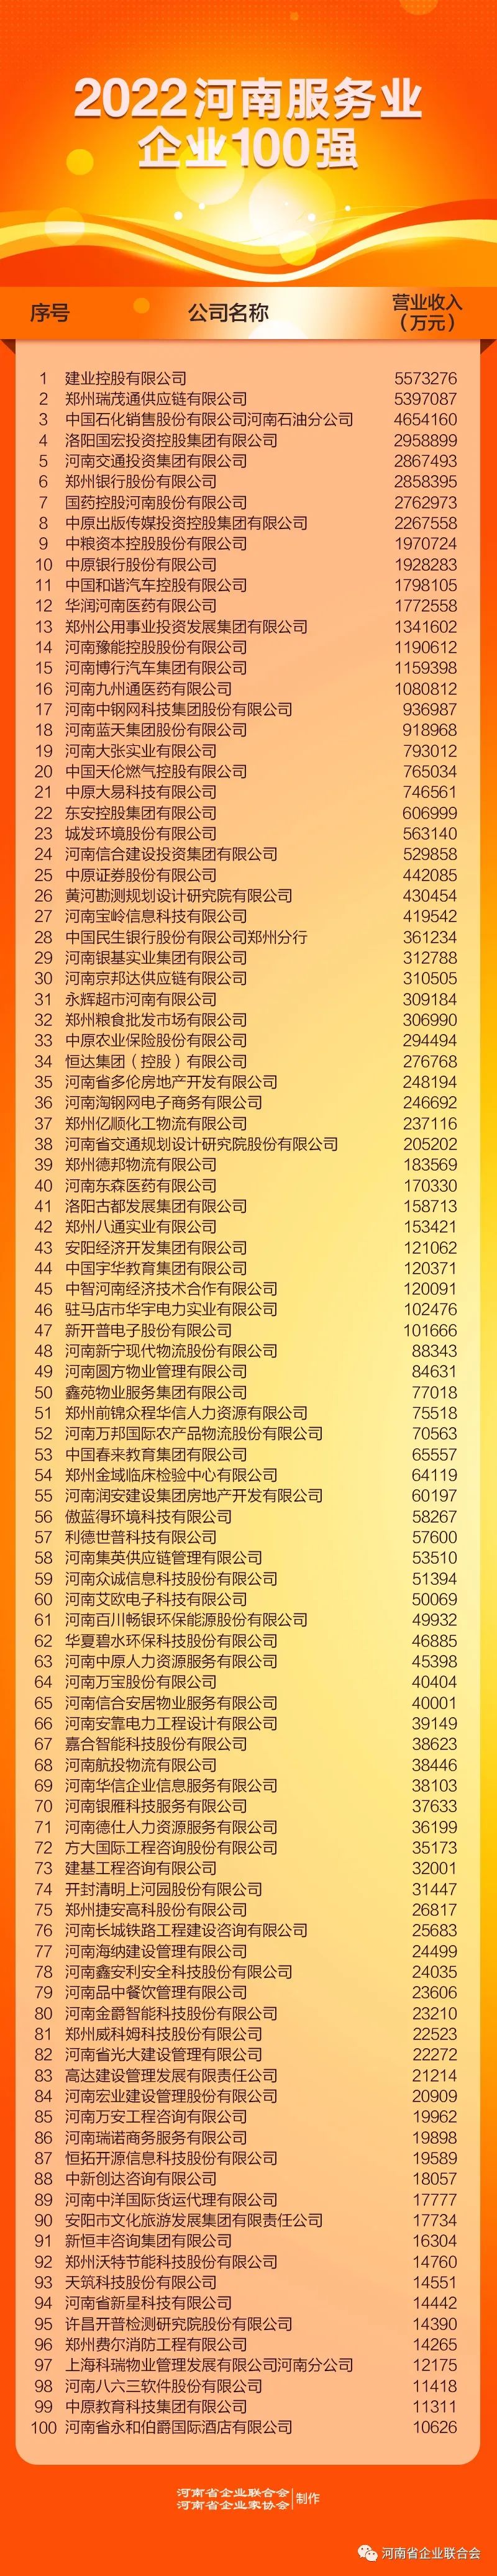 2022河南企业100强榜单发布